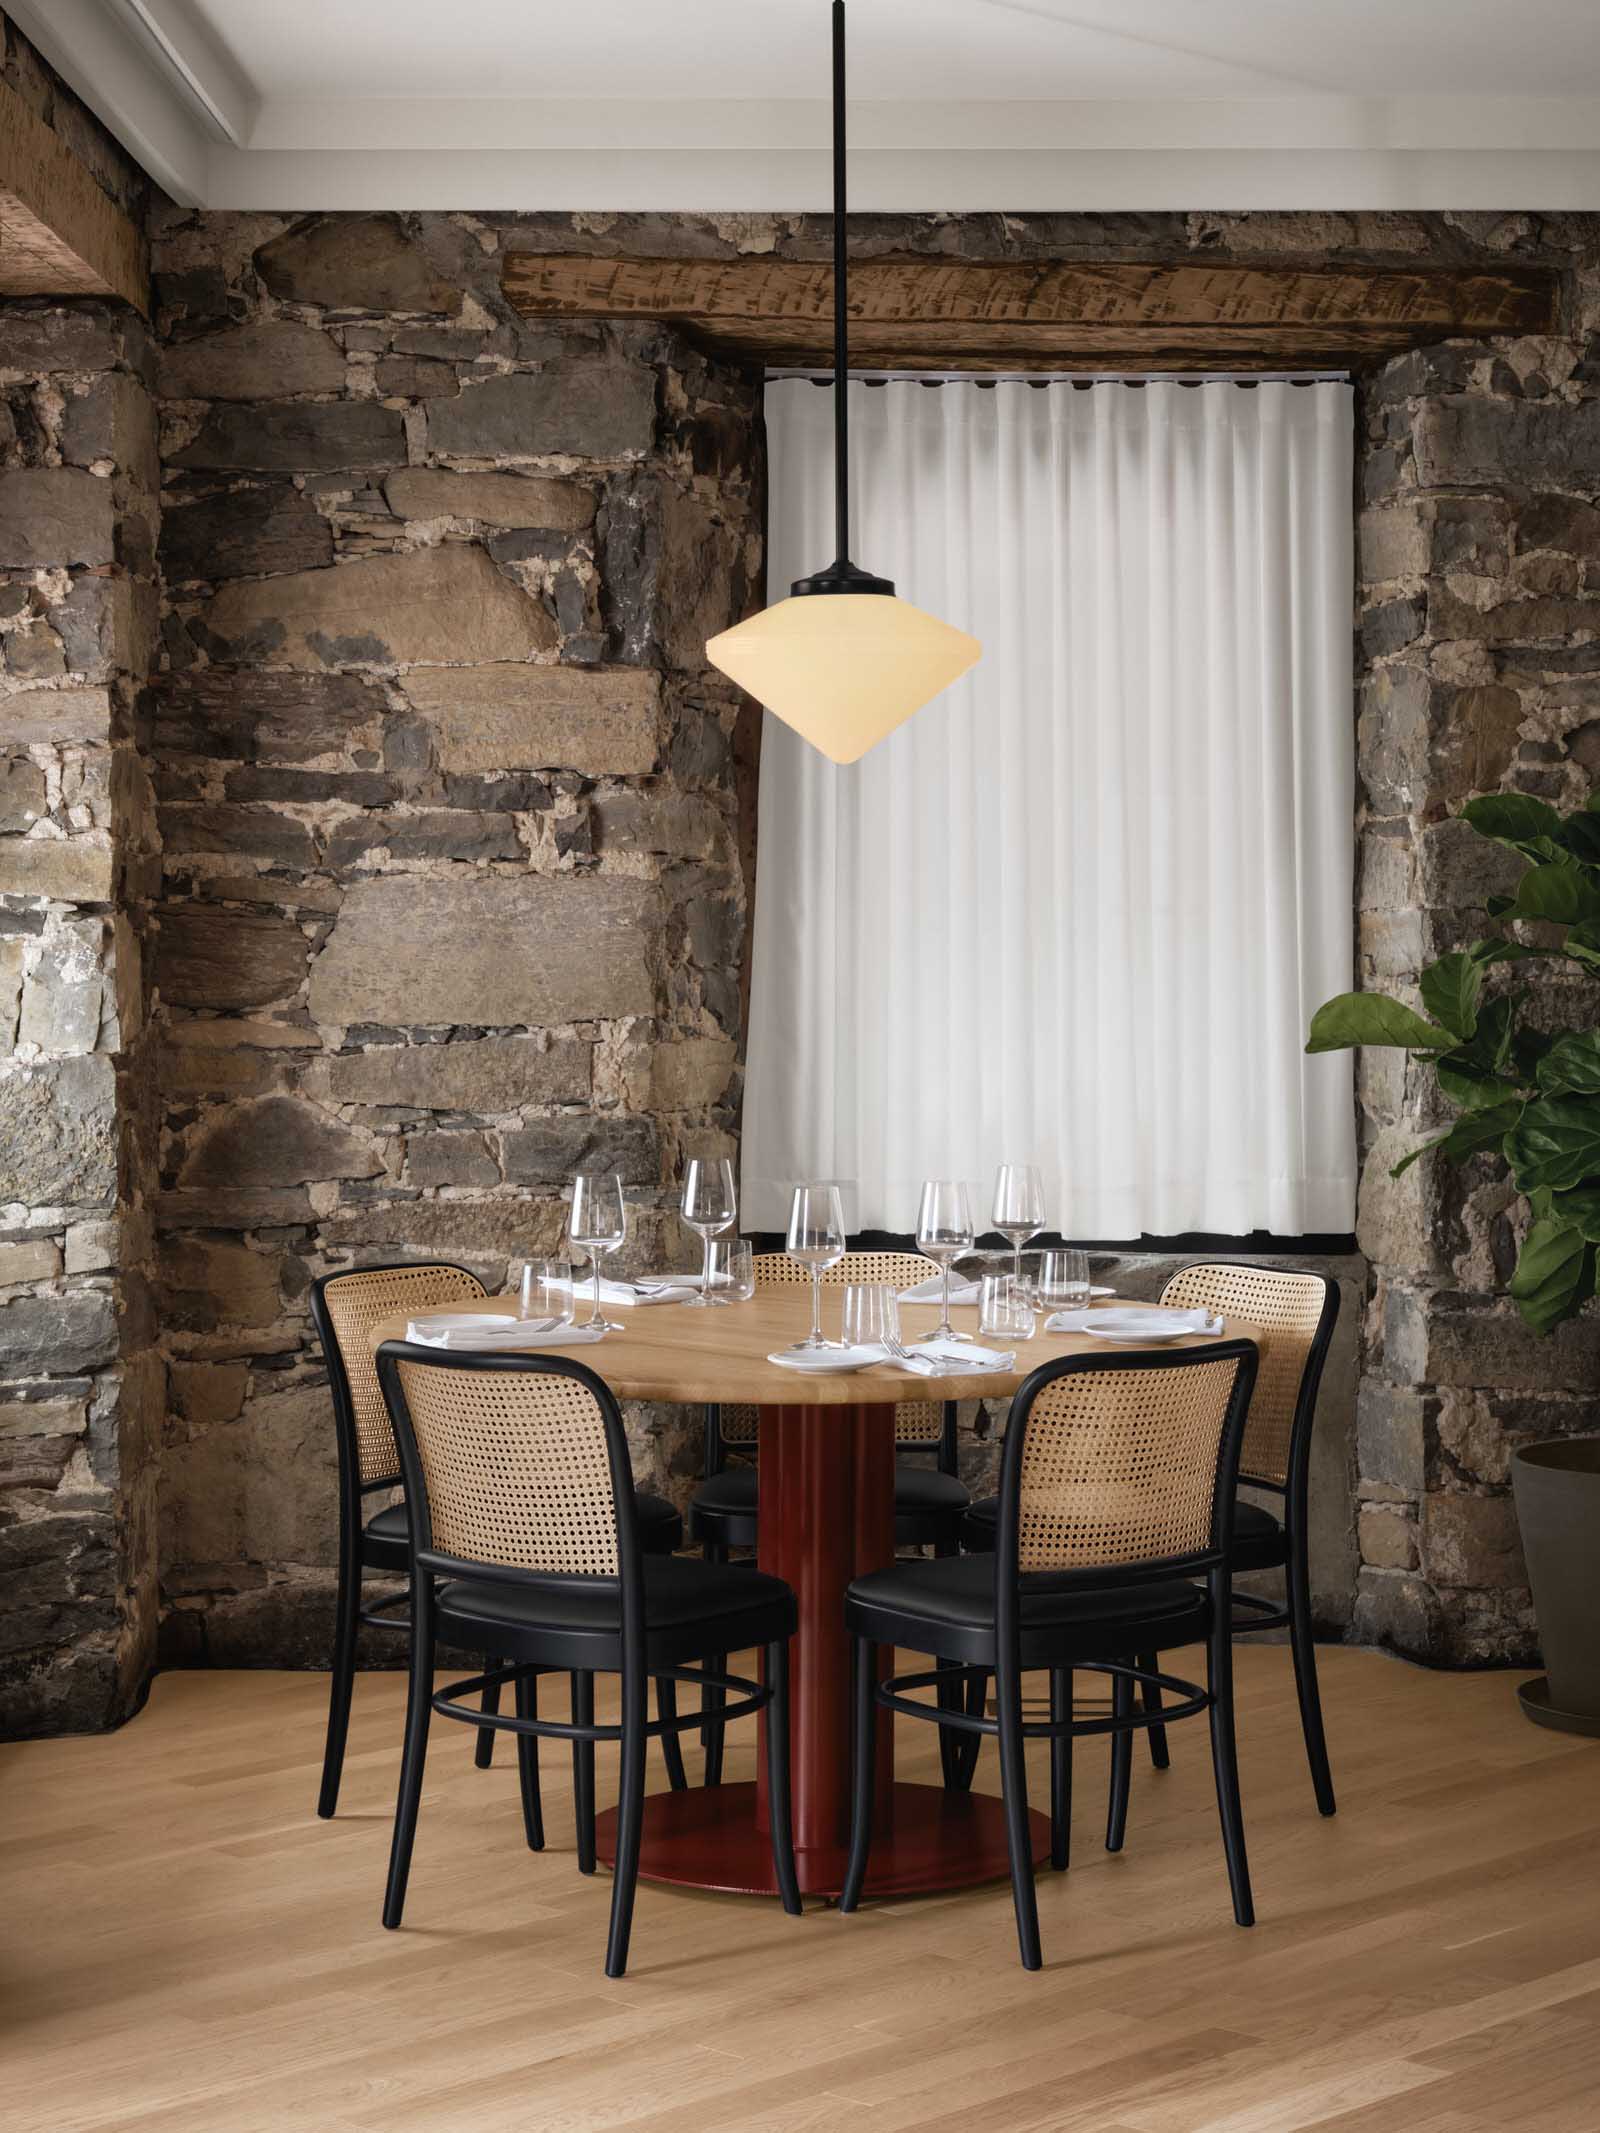 西餐厅设计,Isern Serra Studio,休闲餐厅设计,蒙特利尔,现代风格餐厅设计案例,酒吧餐厅